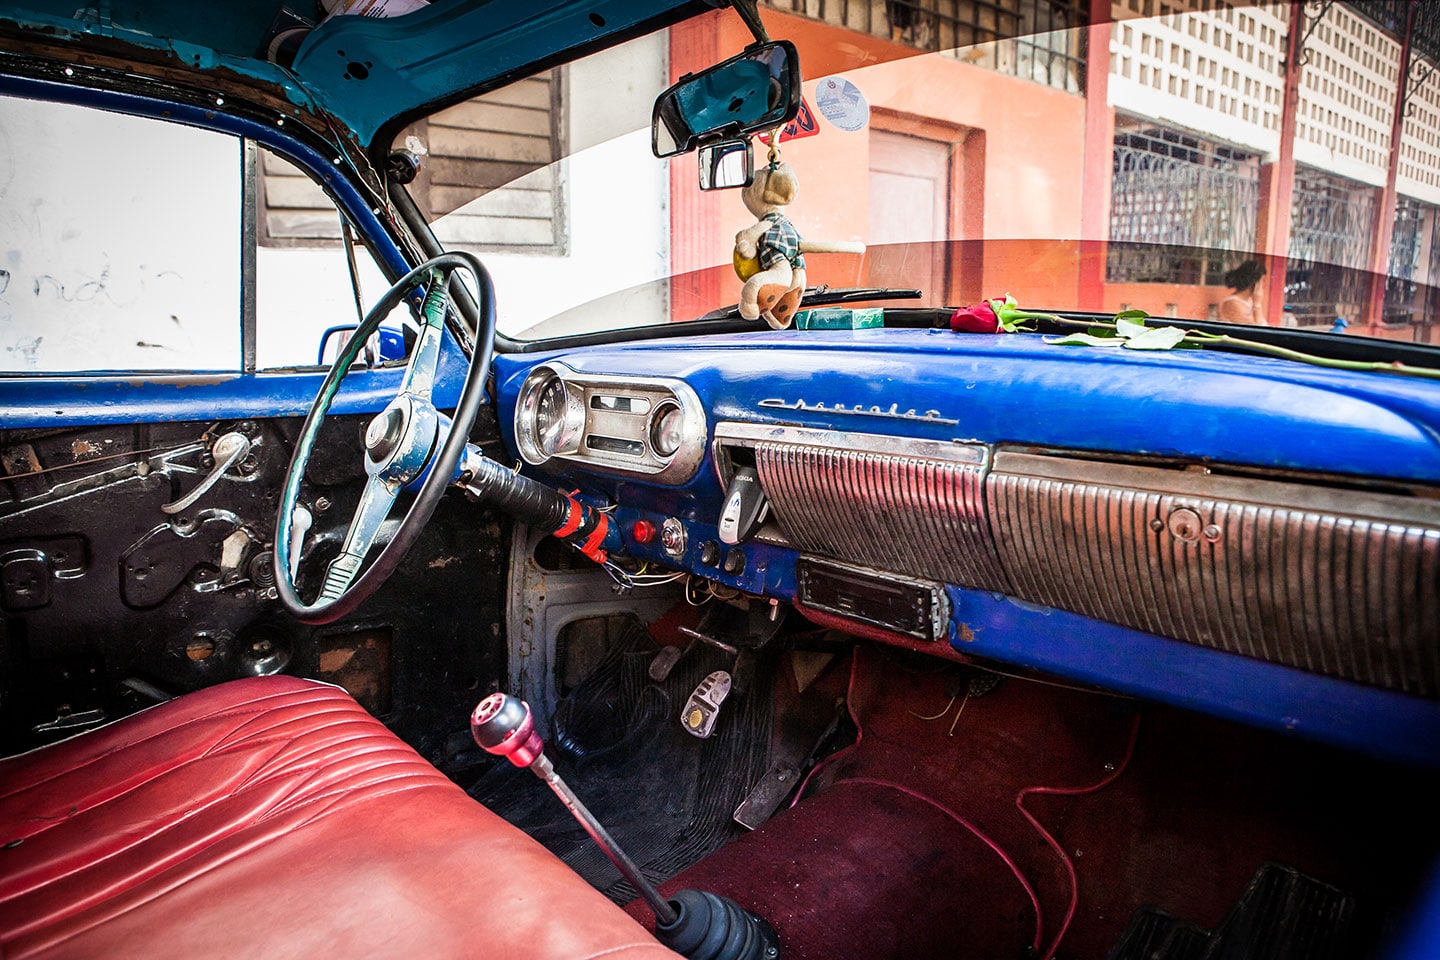 Inside of a vintage car in Havana, Cuba